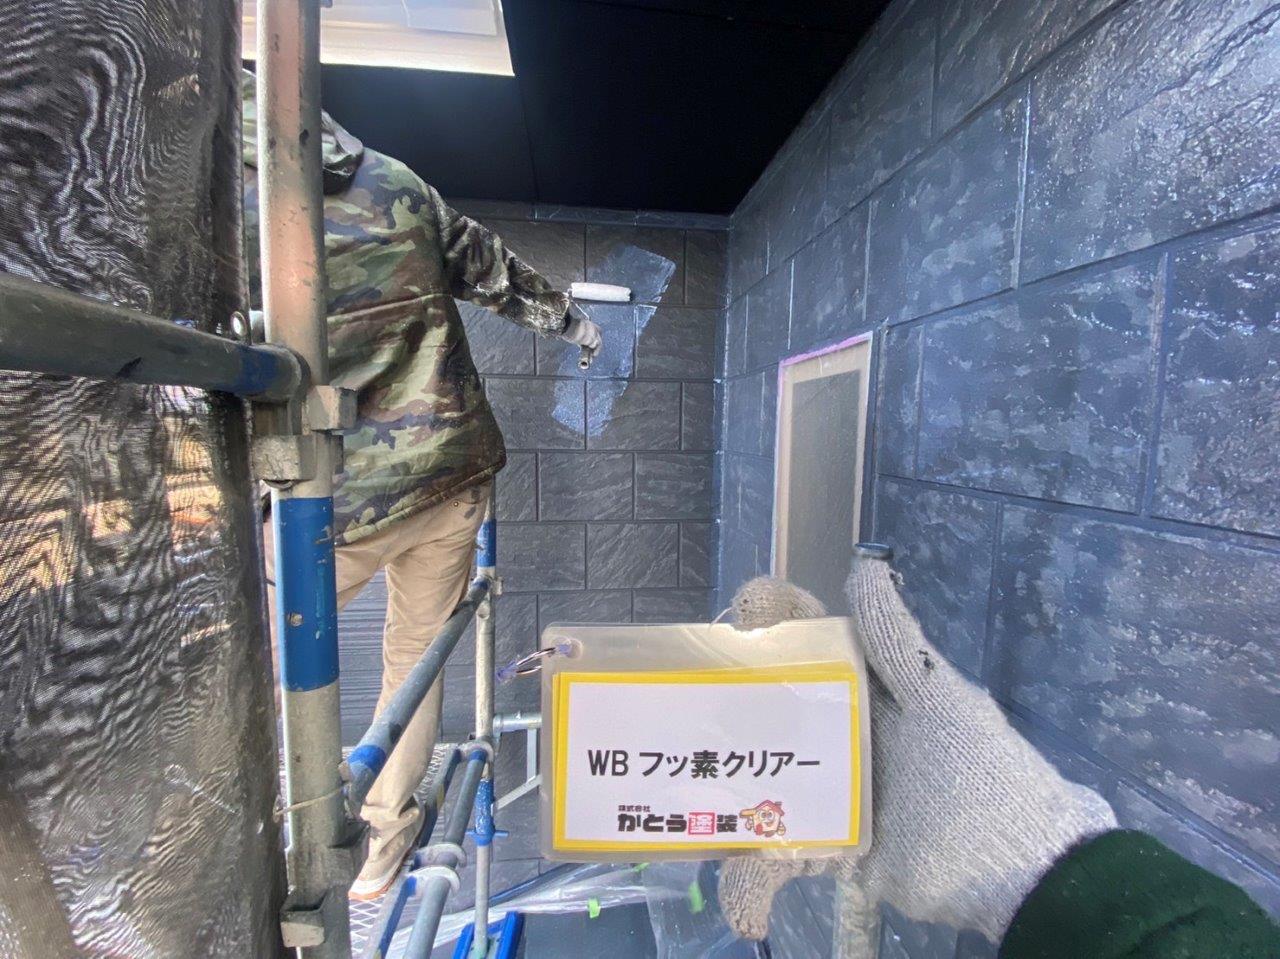 熊本市龍田Y様邸外壁塗装，WB多彩模様仕上げ工法のフッ素クリアー塗装をおこないました。